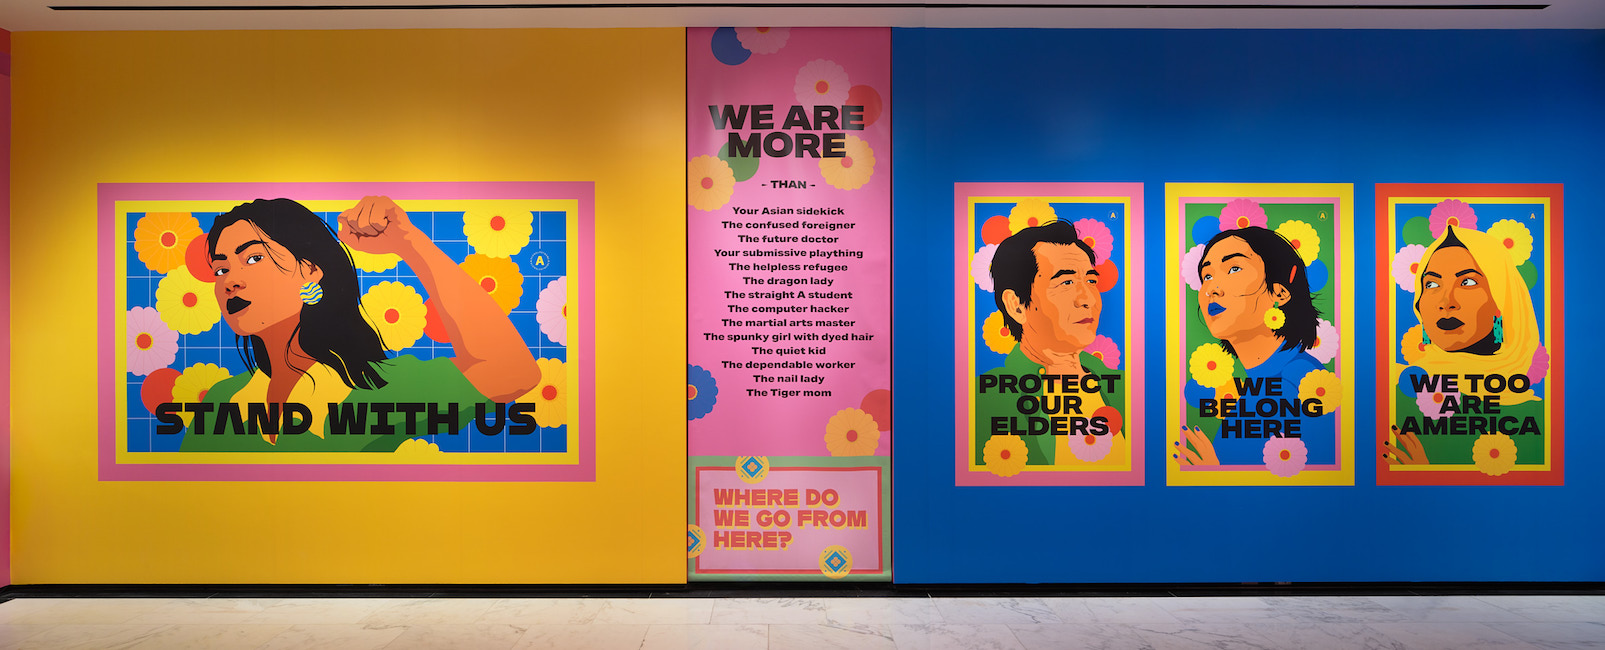 Plan d'installation de "Raise Your Voice", montrant des dessins vibrants et colorés d'individus avec du texte.